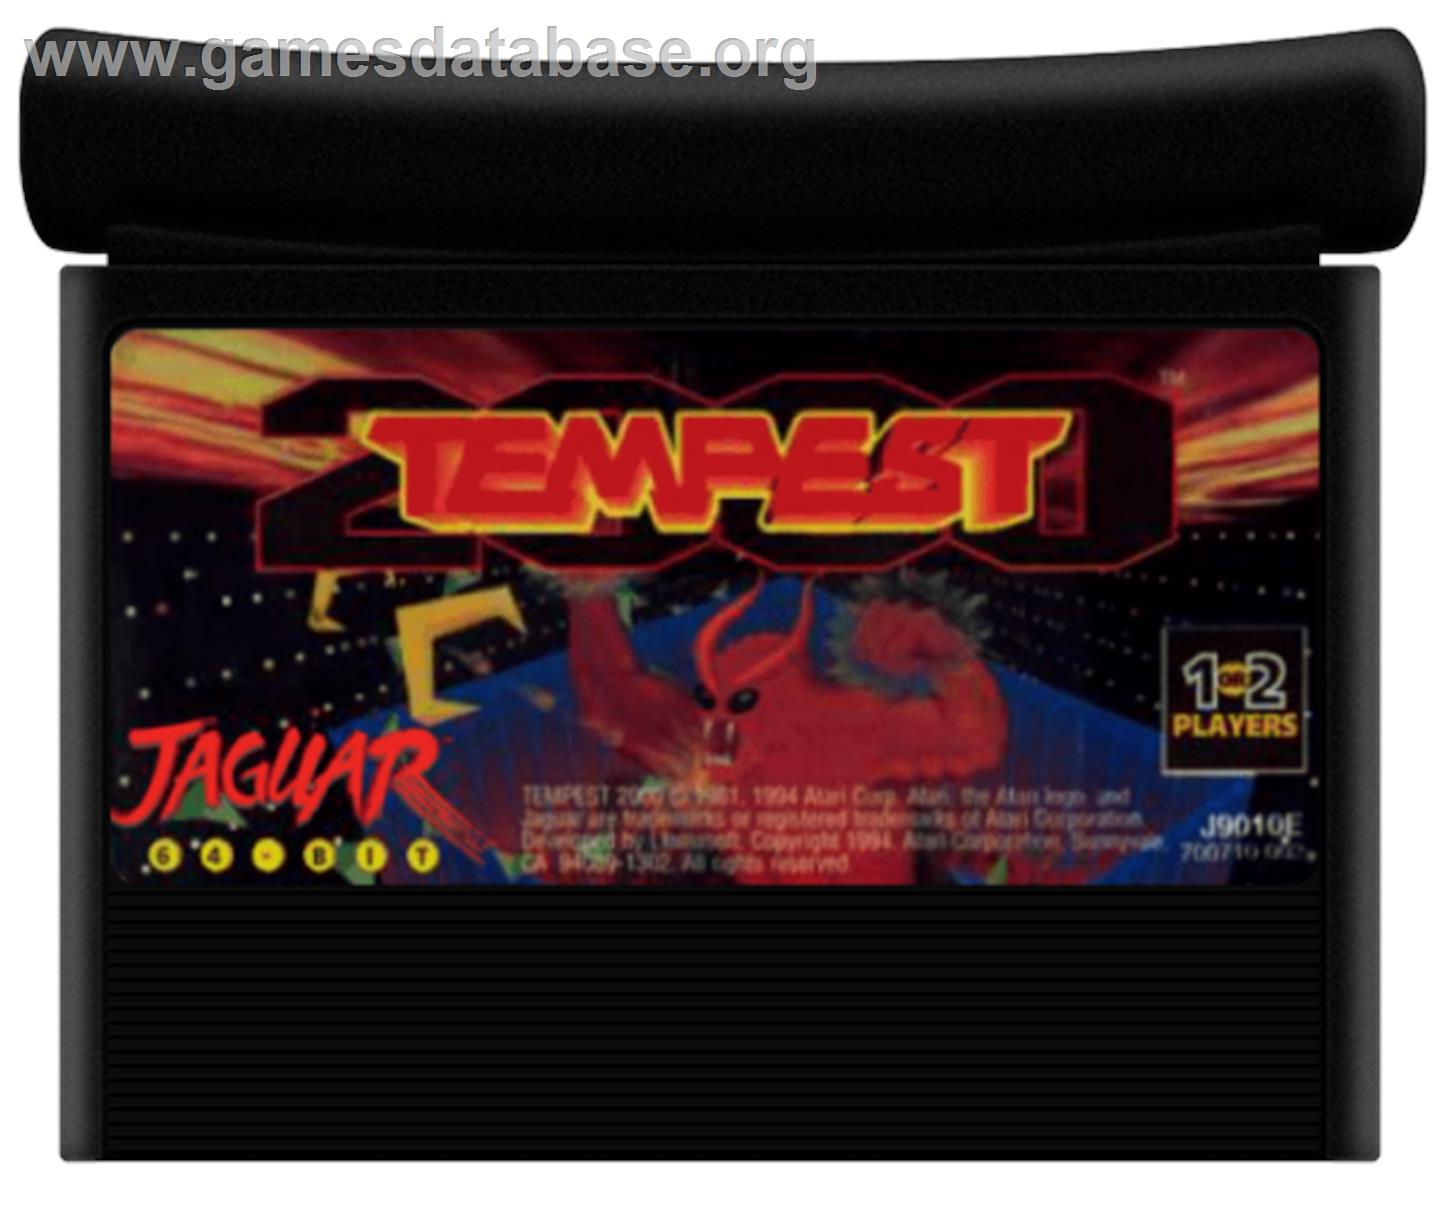 Tempest 2000 - Atari Jaguar - Artwork - Cartridge